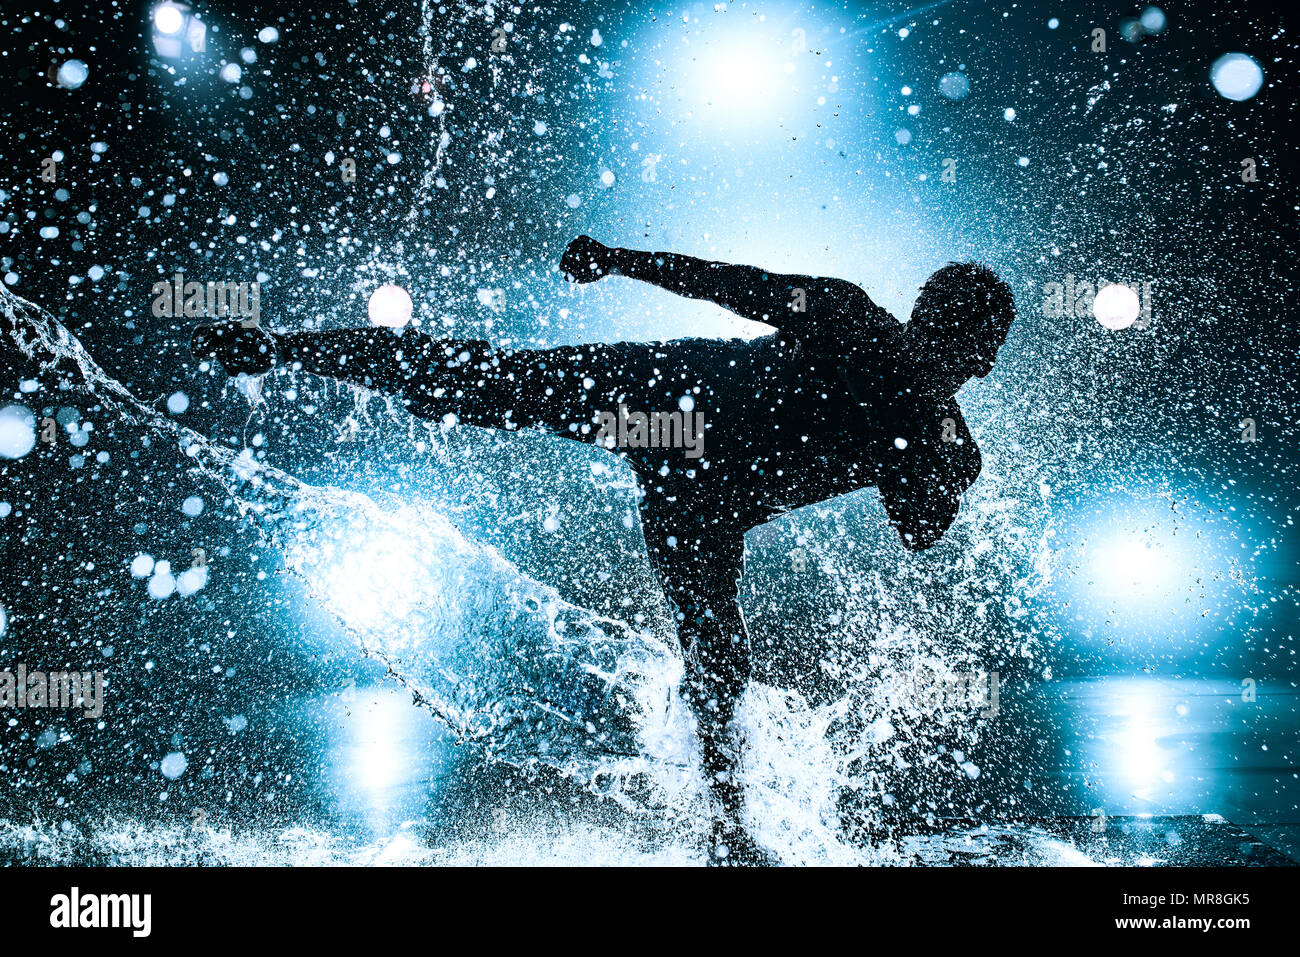 Junger Mann pause Tanzen im Club mit Licht und Wasser. Blau getönten Farben und dramatische Silhouette. Stockfoto